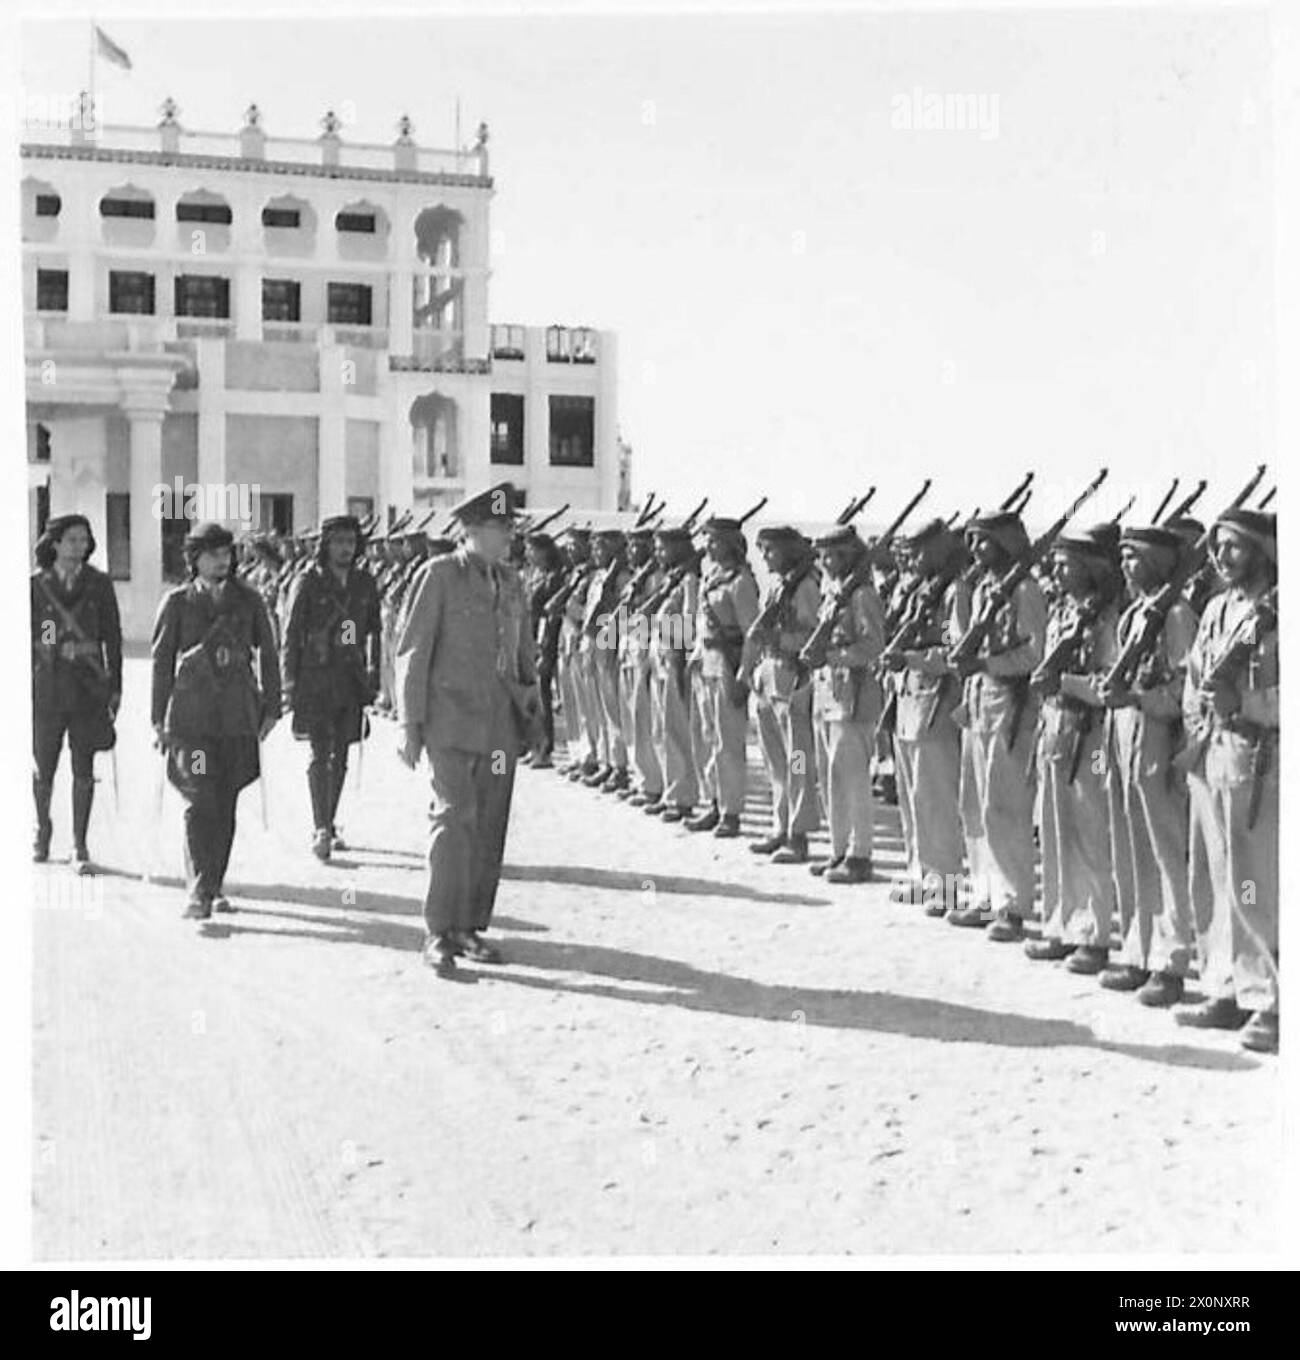 C.I.G.S. VISITA IL MONARCA ARABO - all'arrivo a Jeddah, il capo di stato maggiore imperiale Lord Alanbrooke ispezionò una guardia d'onore formata dalle truppe saudite nel cortile del Palazzo del Re Foto Stock